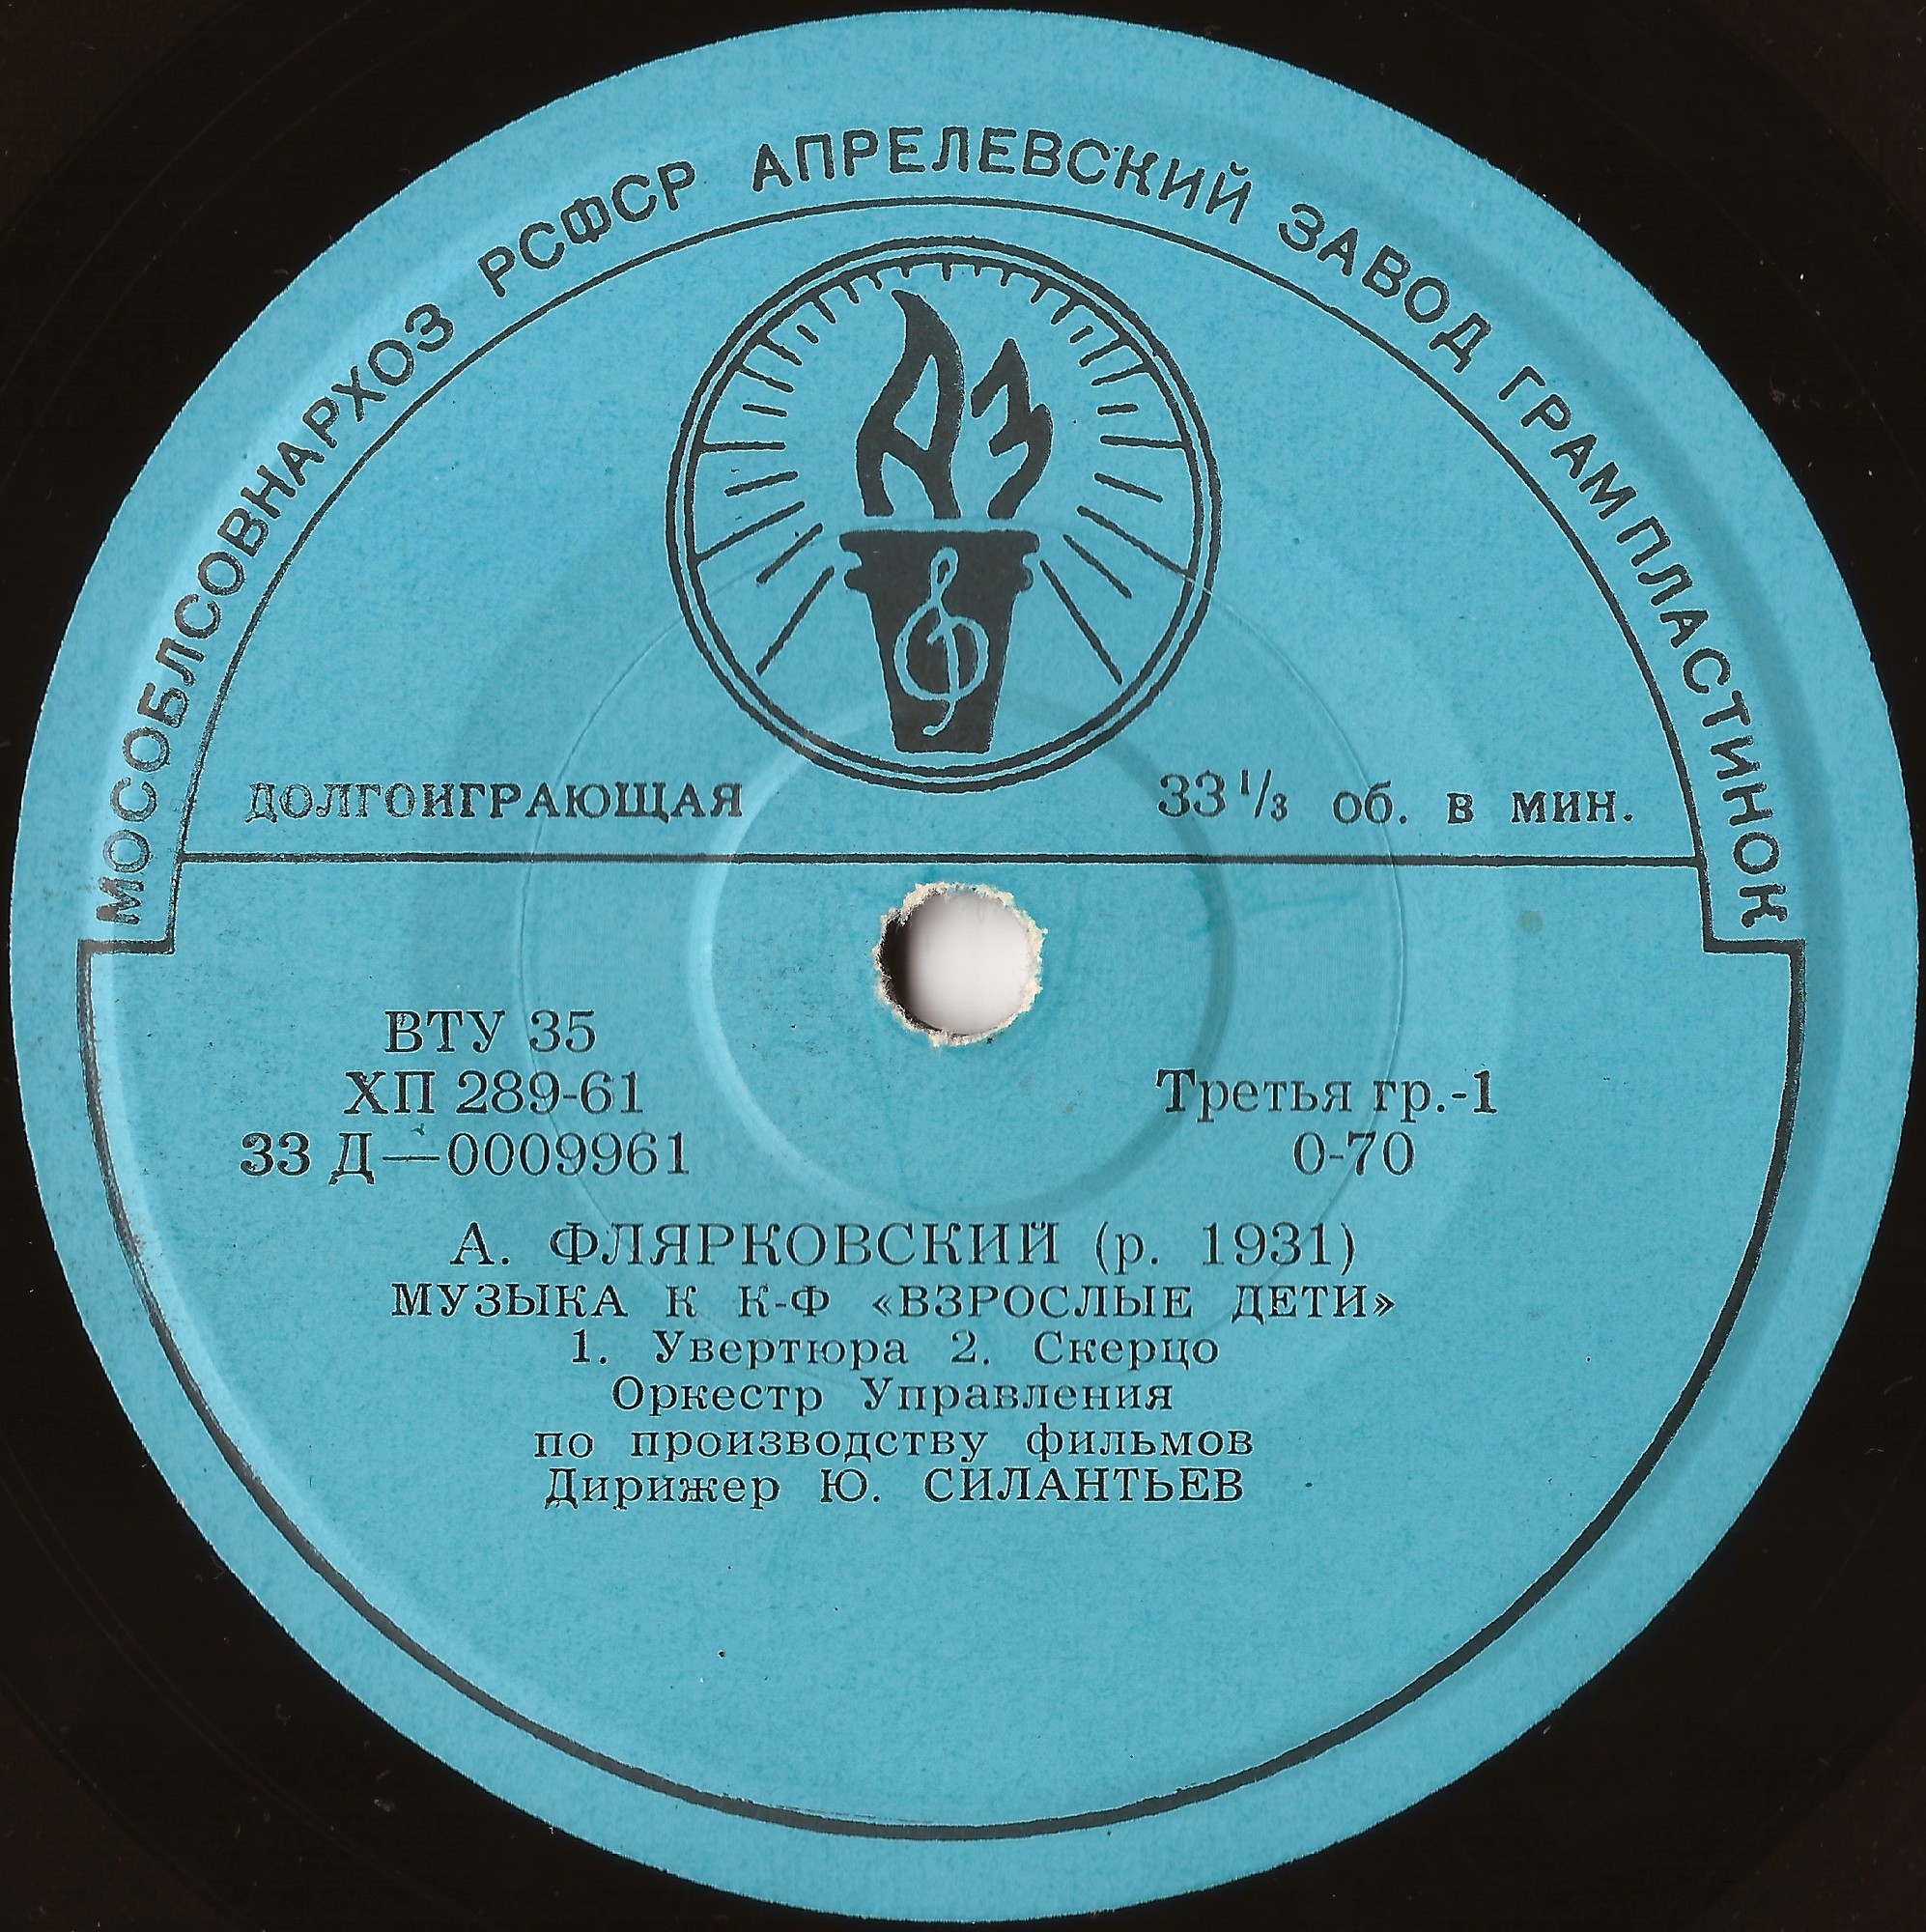 А. ФЛЯРКОВСКИЙ (1931) - Музыка к к-ф «Взрослые дети»